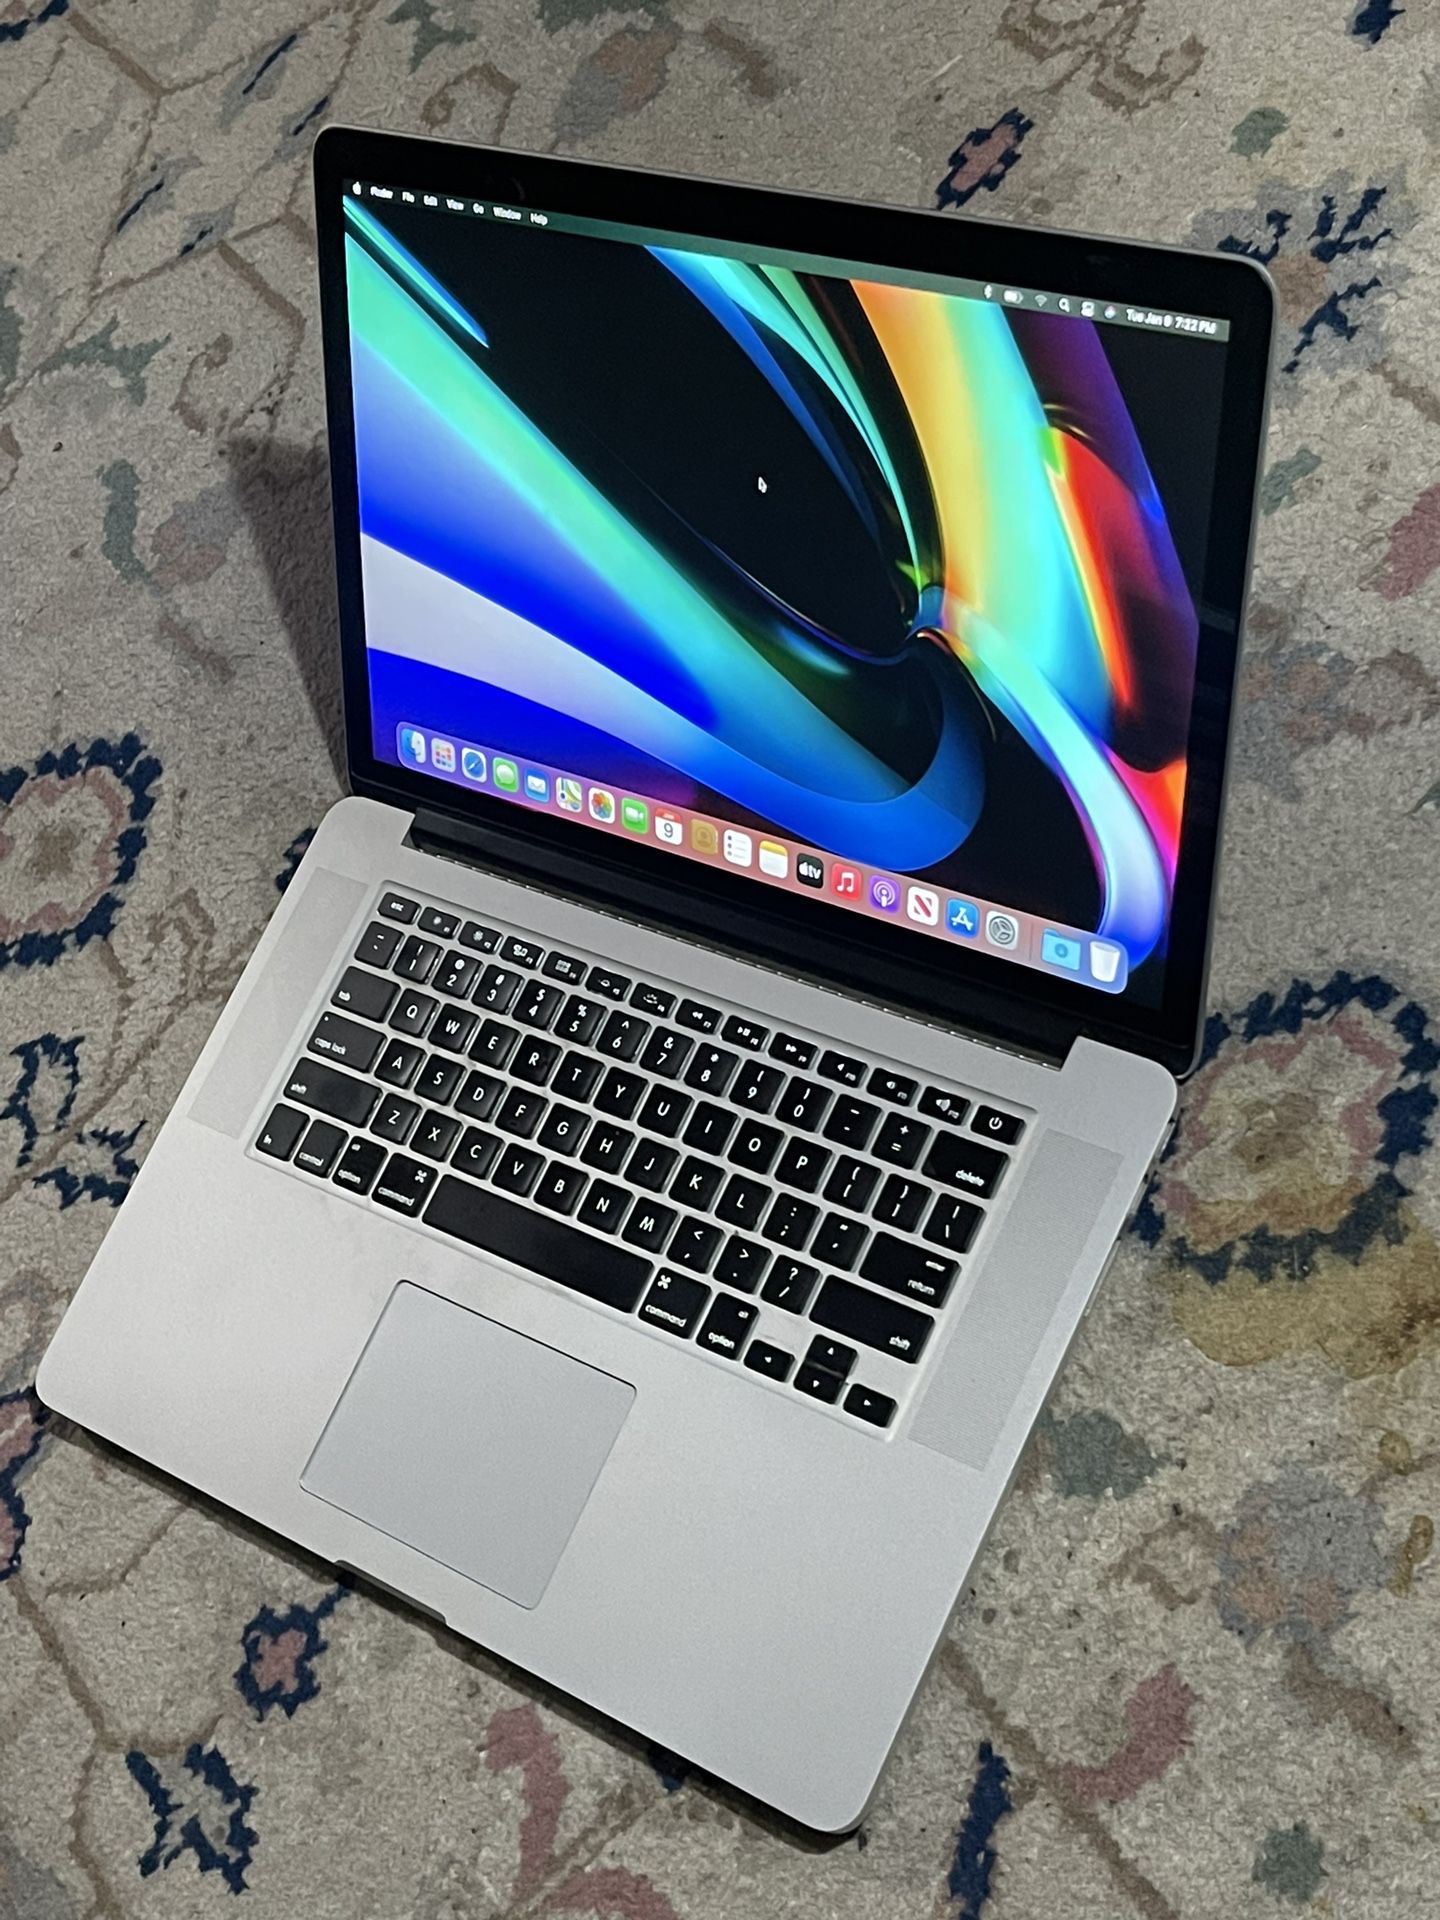 15” Apple MacBook Pro Retina Quad Core I7, 8GB DDR3 RAM, 128GB SSD $250 FIRM